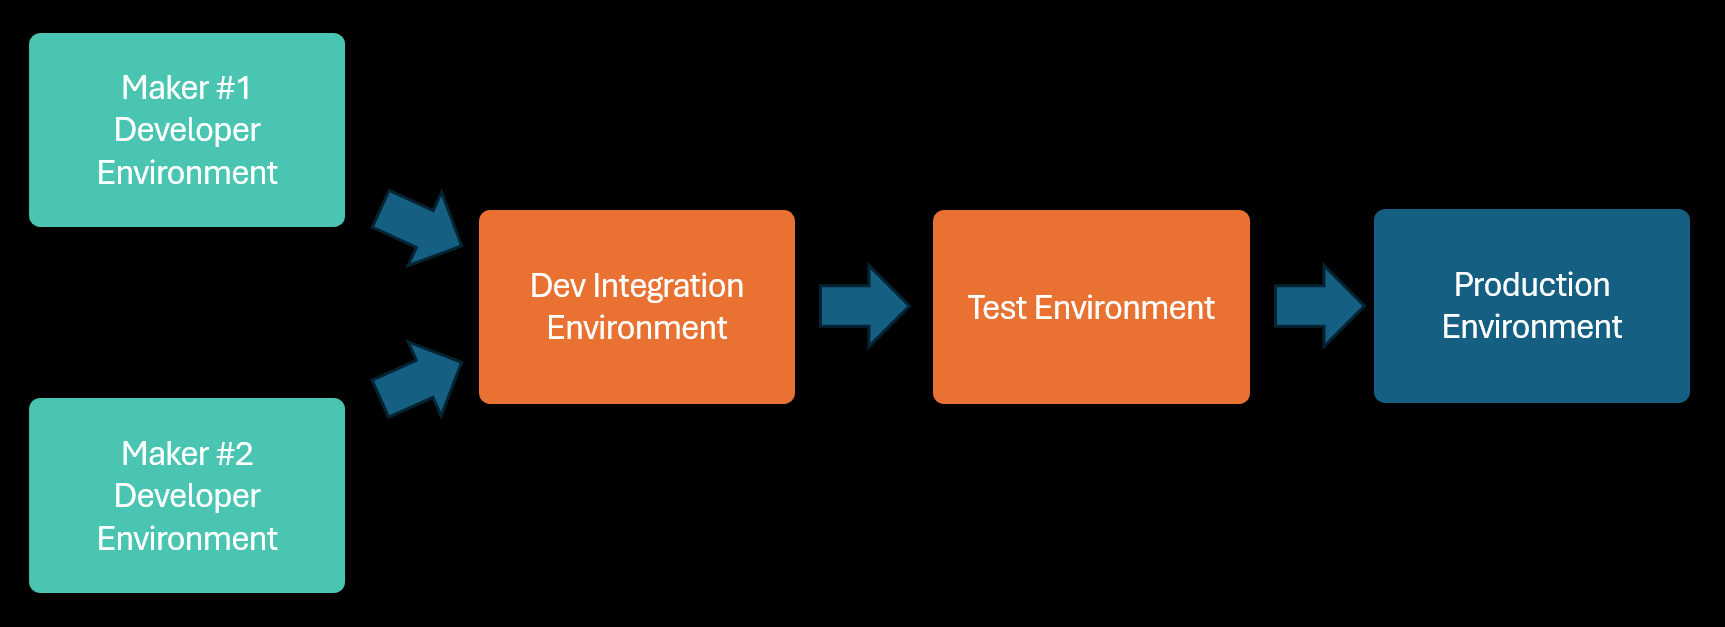 Diagram ilustrujący aplikację przedsiębiorstwa pod kątem projektowania w indywidualnych środowiskach połączonych ze środowiskiem integracji współużytkowania, a następnie przetestowanych i wdrożonych w środowiskach udostępnianych przez inne aplikacje